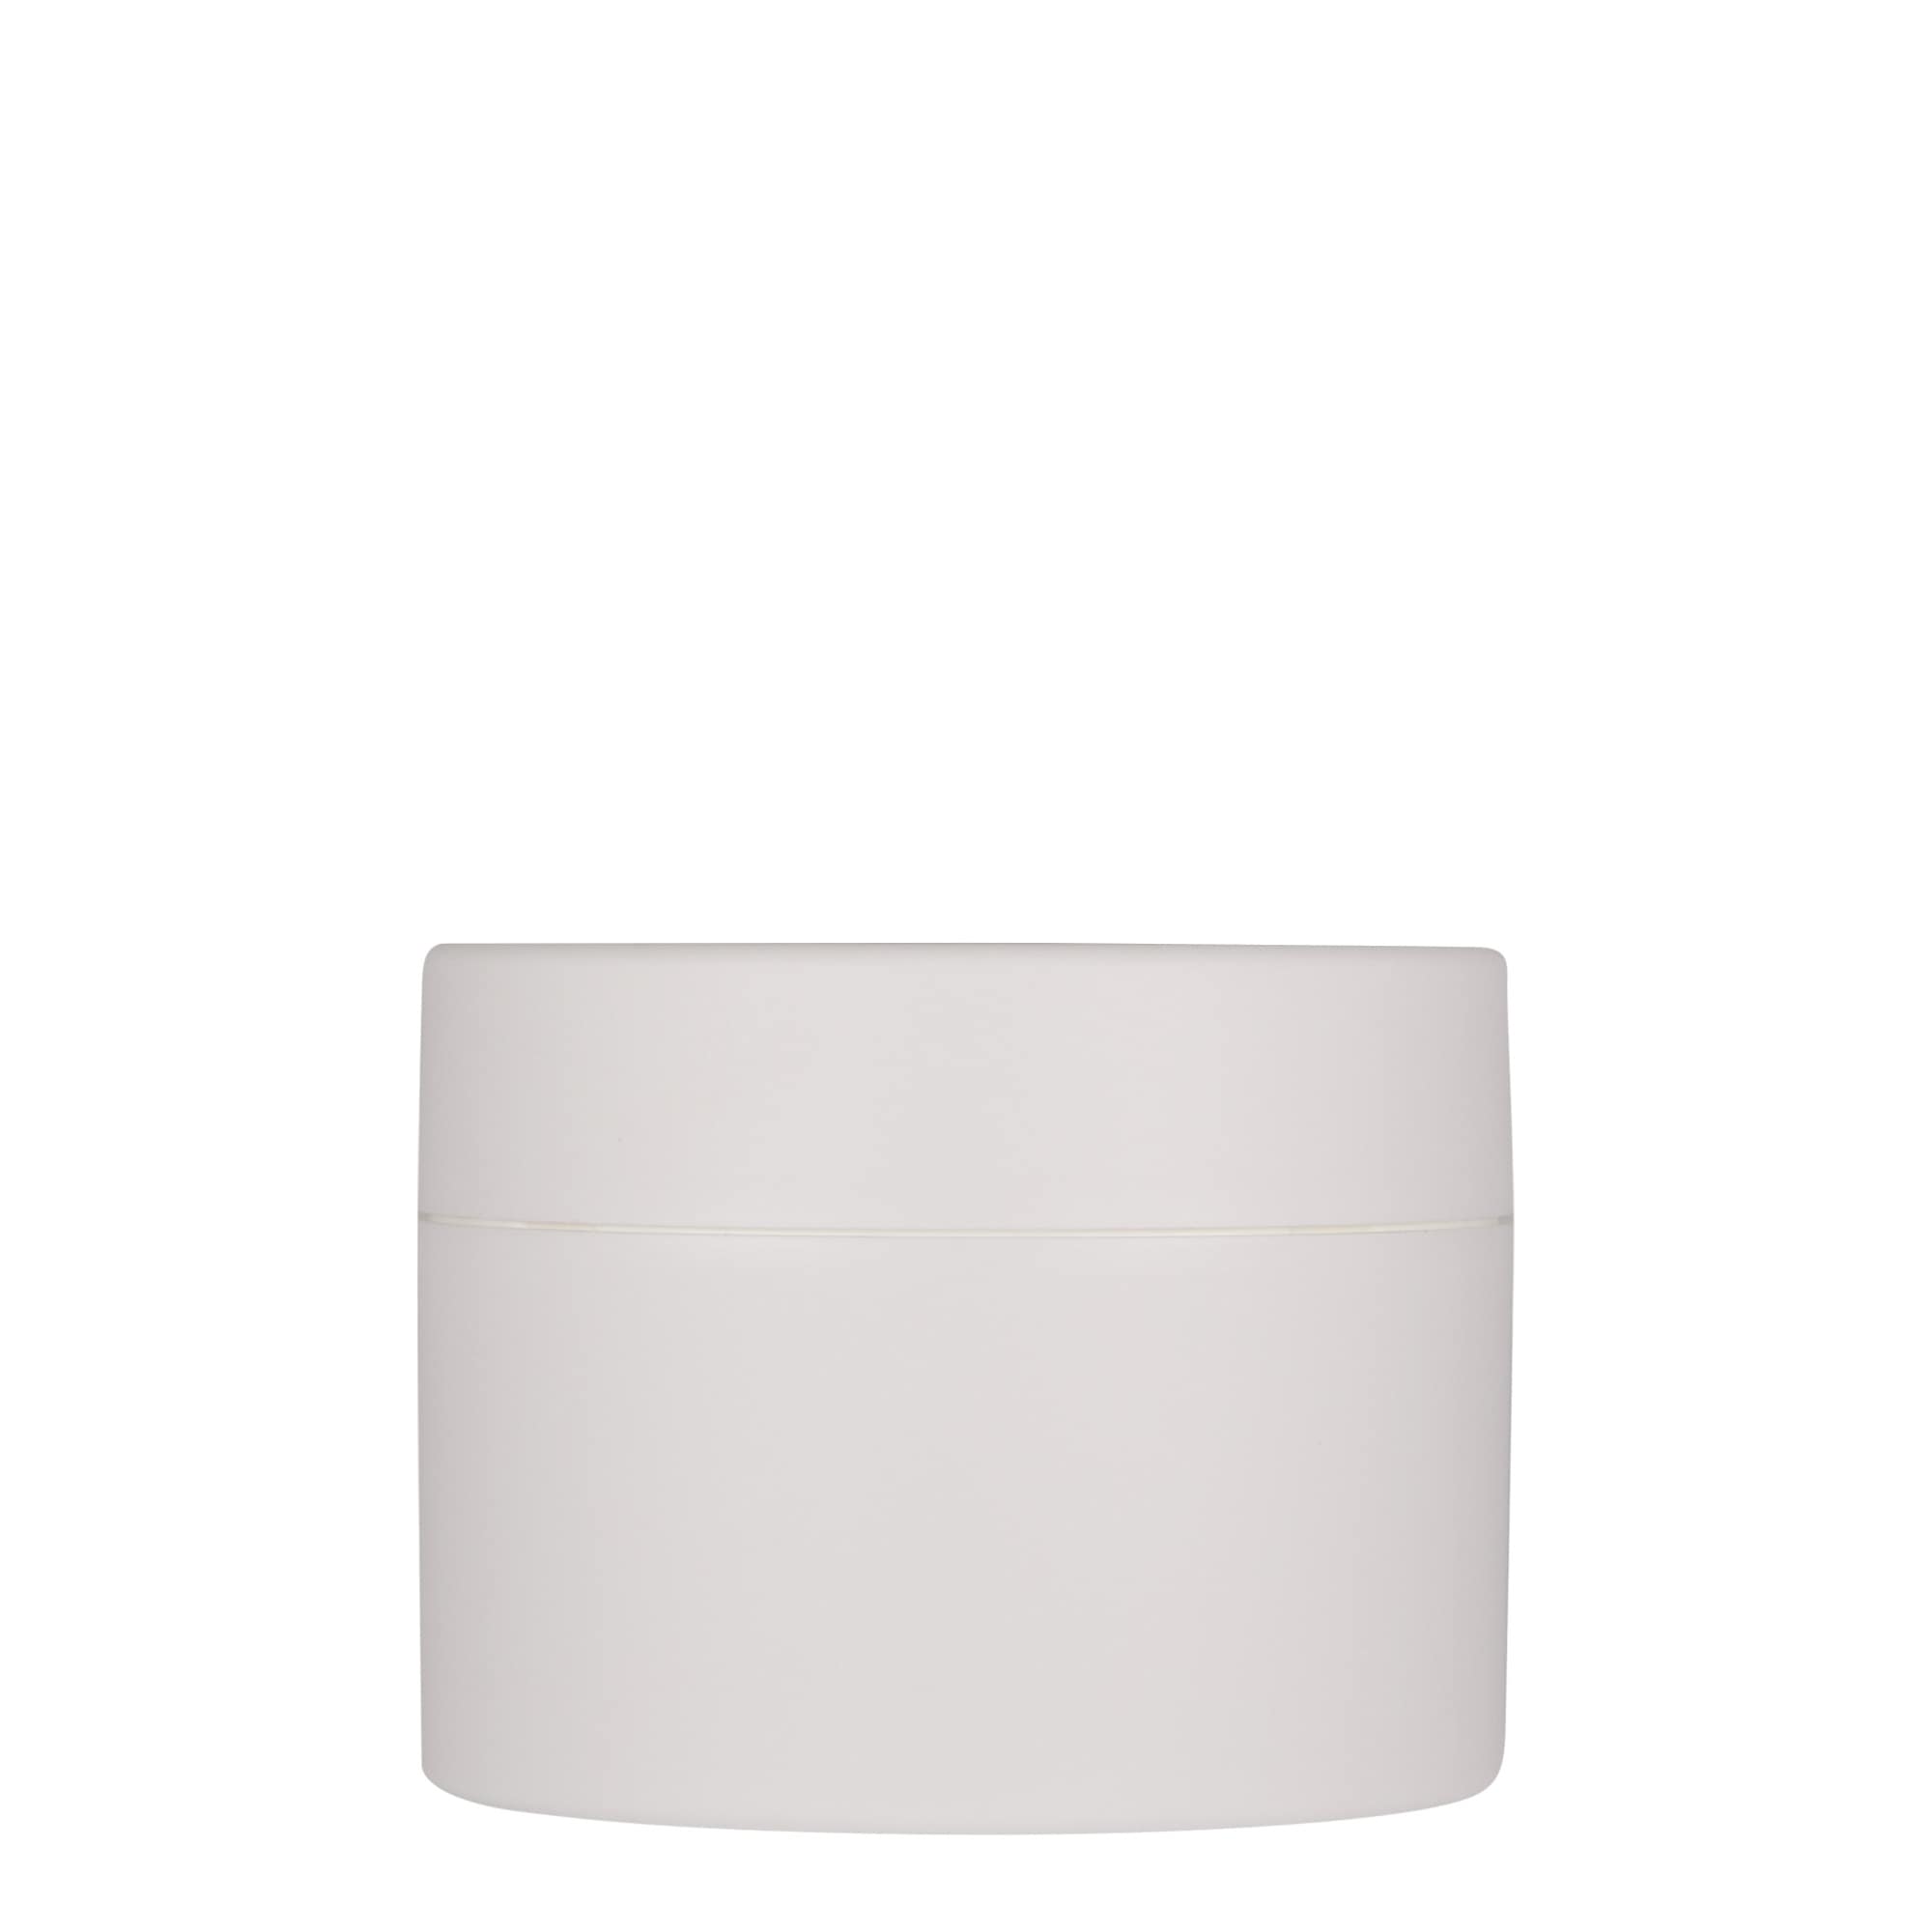 250 ml plastic jar 'Antonella', PP, white, closure: screw cap